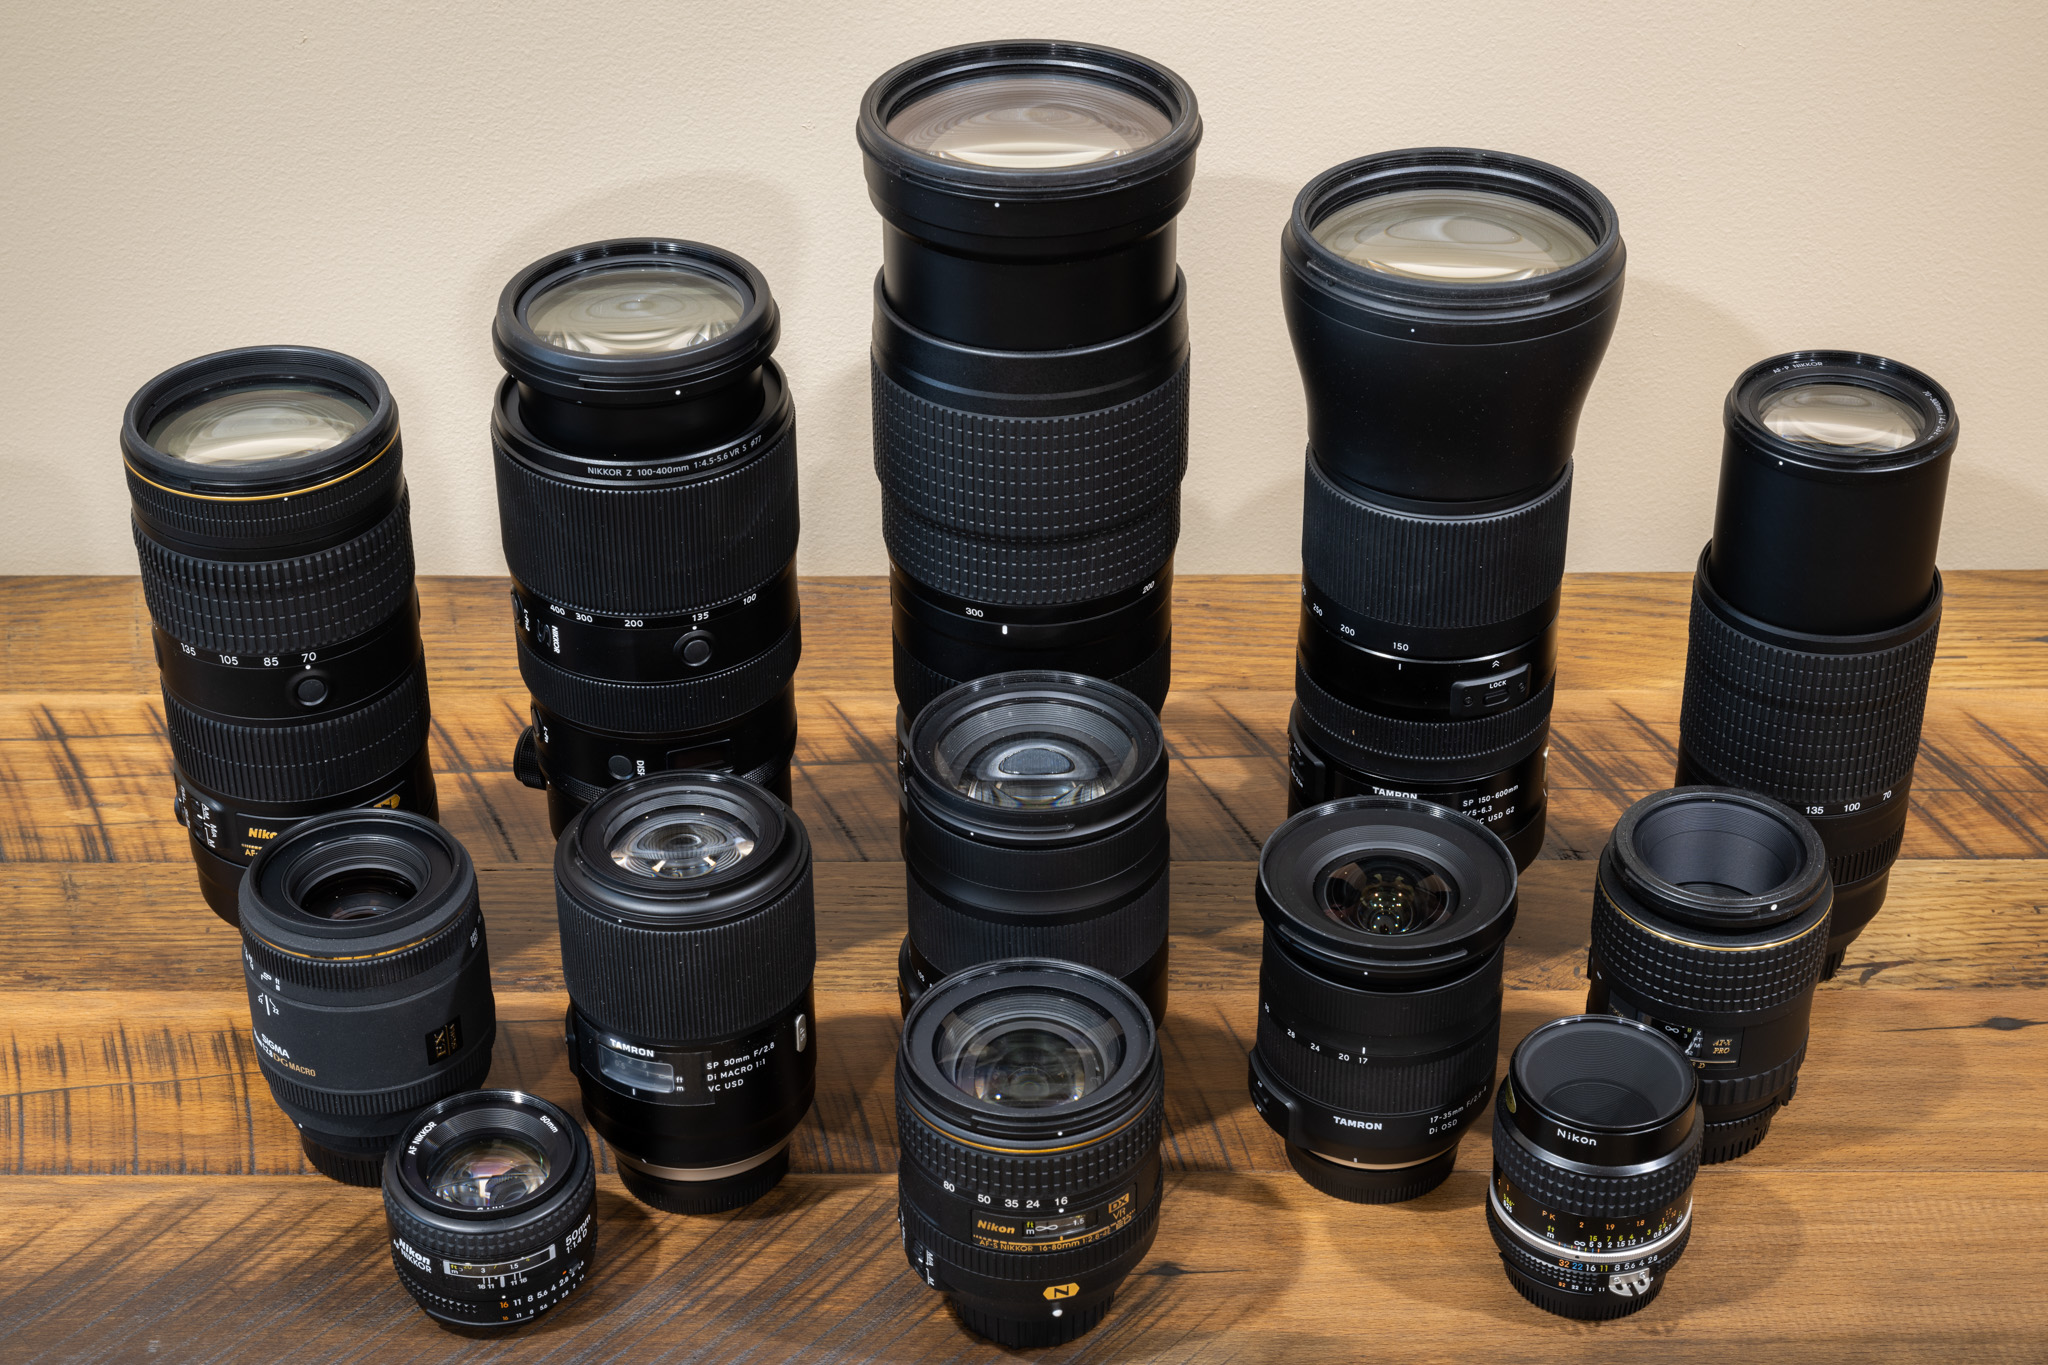 Doctor in de filosofie houten uitroepen What Camera Lens Should I Buy? A Beginner's Guide